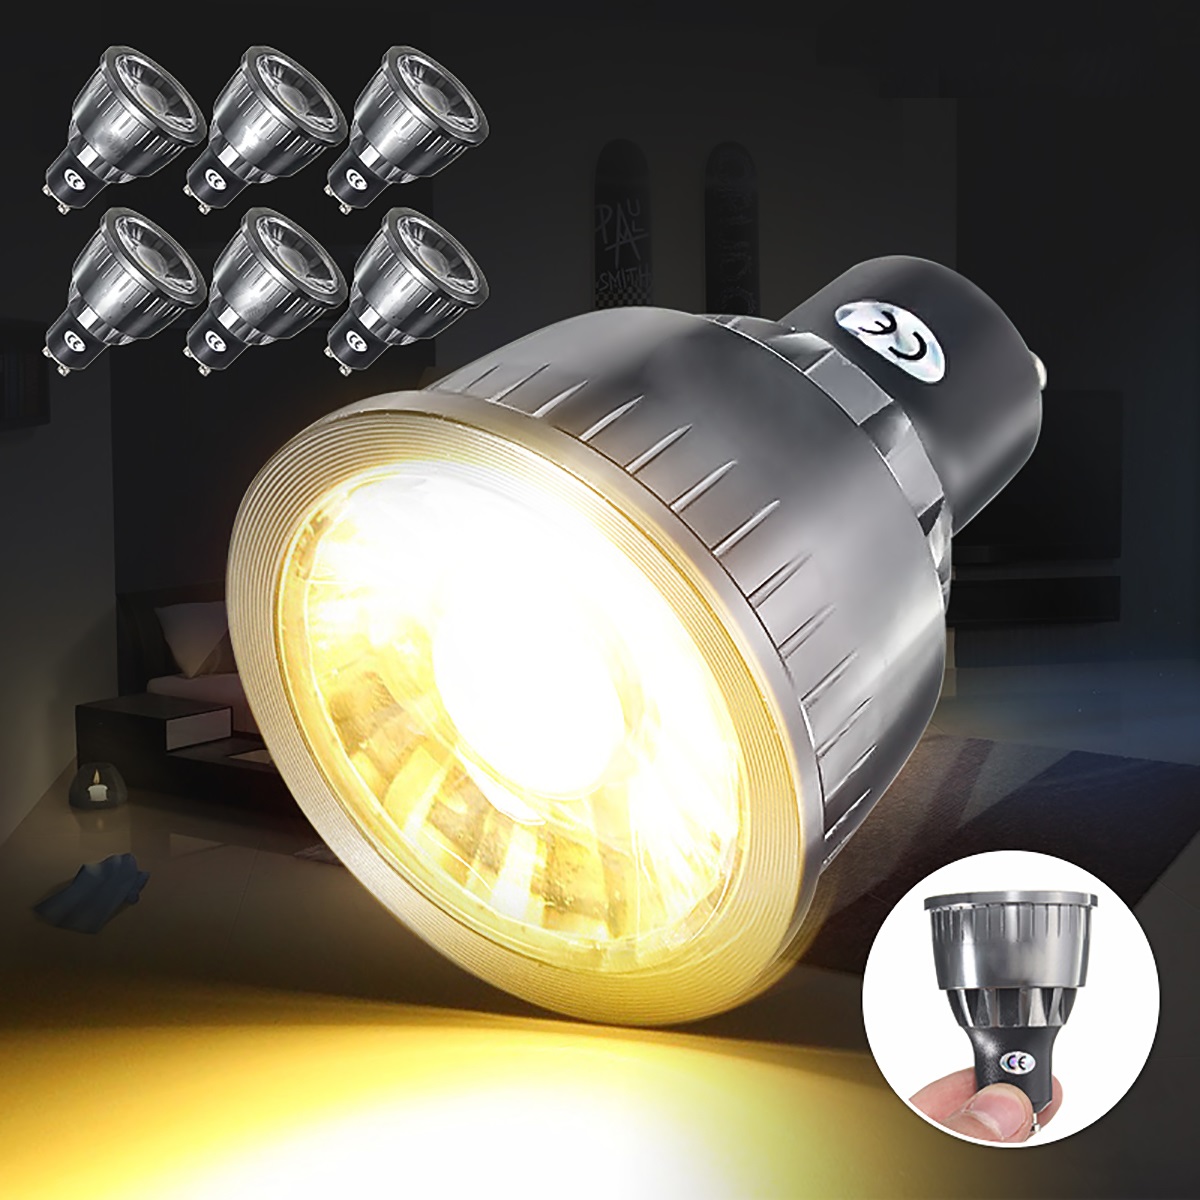 GU10-5W-COB-LED-Light-Bulb-Energy-Saving-Spotlight-Lamp-WarmPure-Natural-White-Light-1894179-1